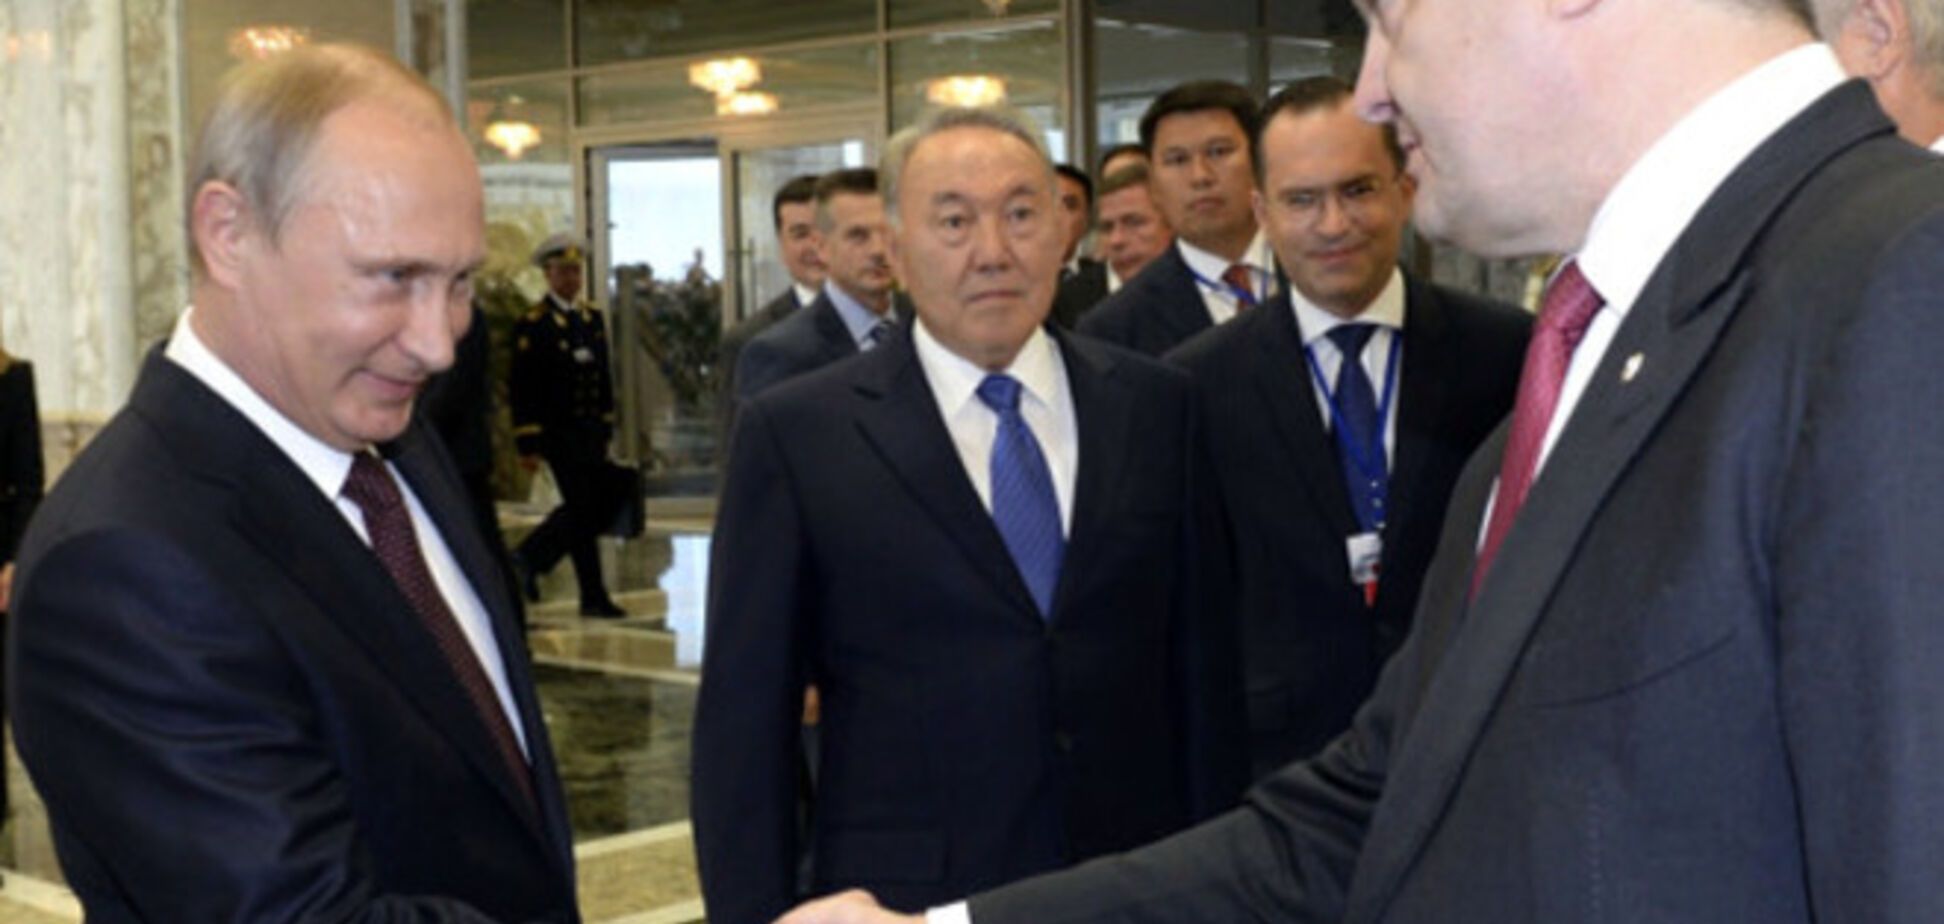 Огрызко рассказал, какие выводы должен сделать Порошенко из пресс-конференции Путина